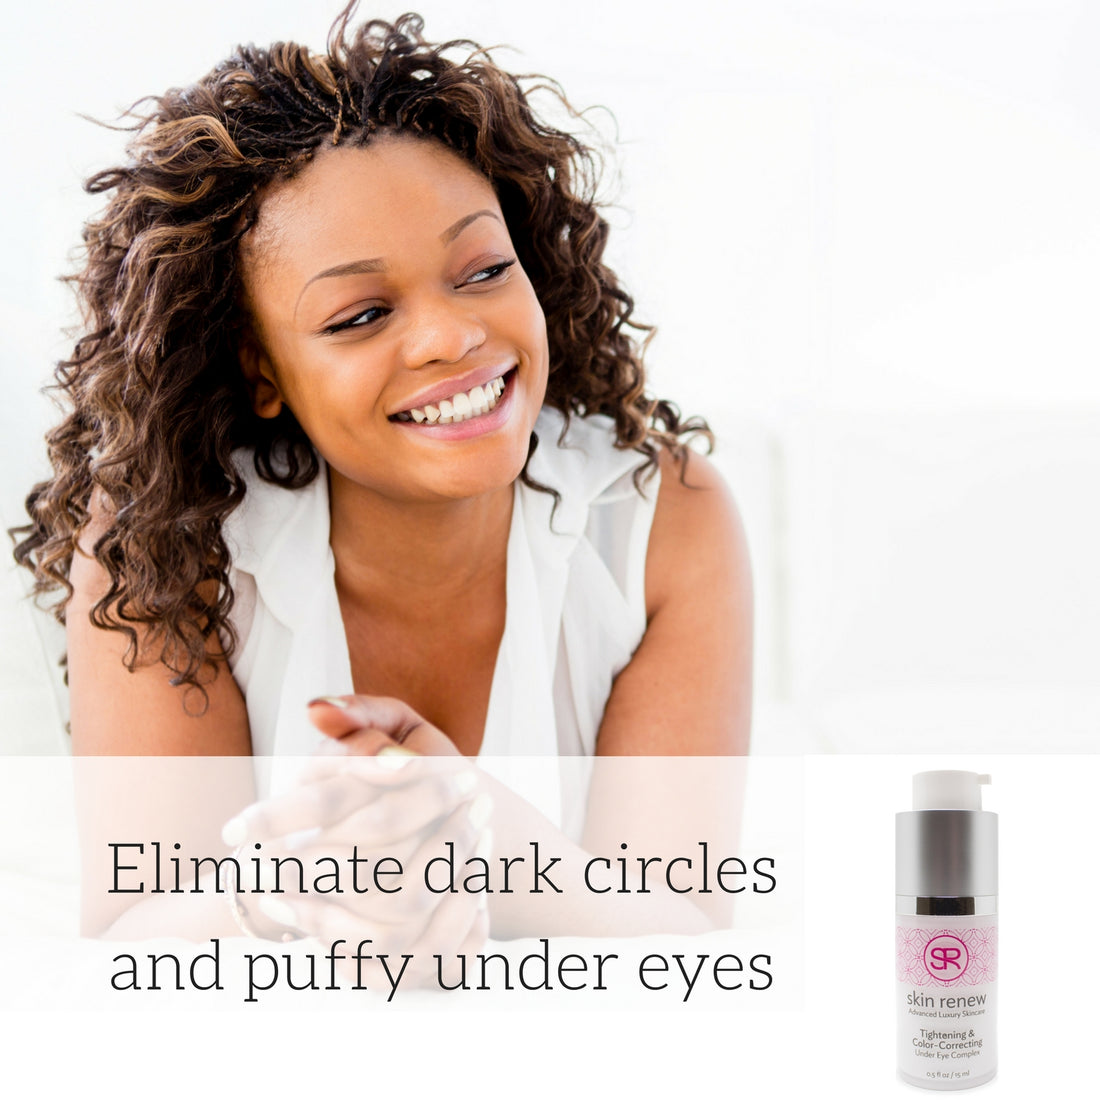 How to Lighten Dark Circles Under the Eyes